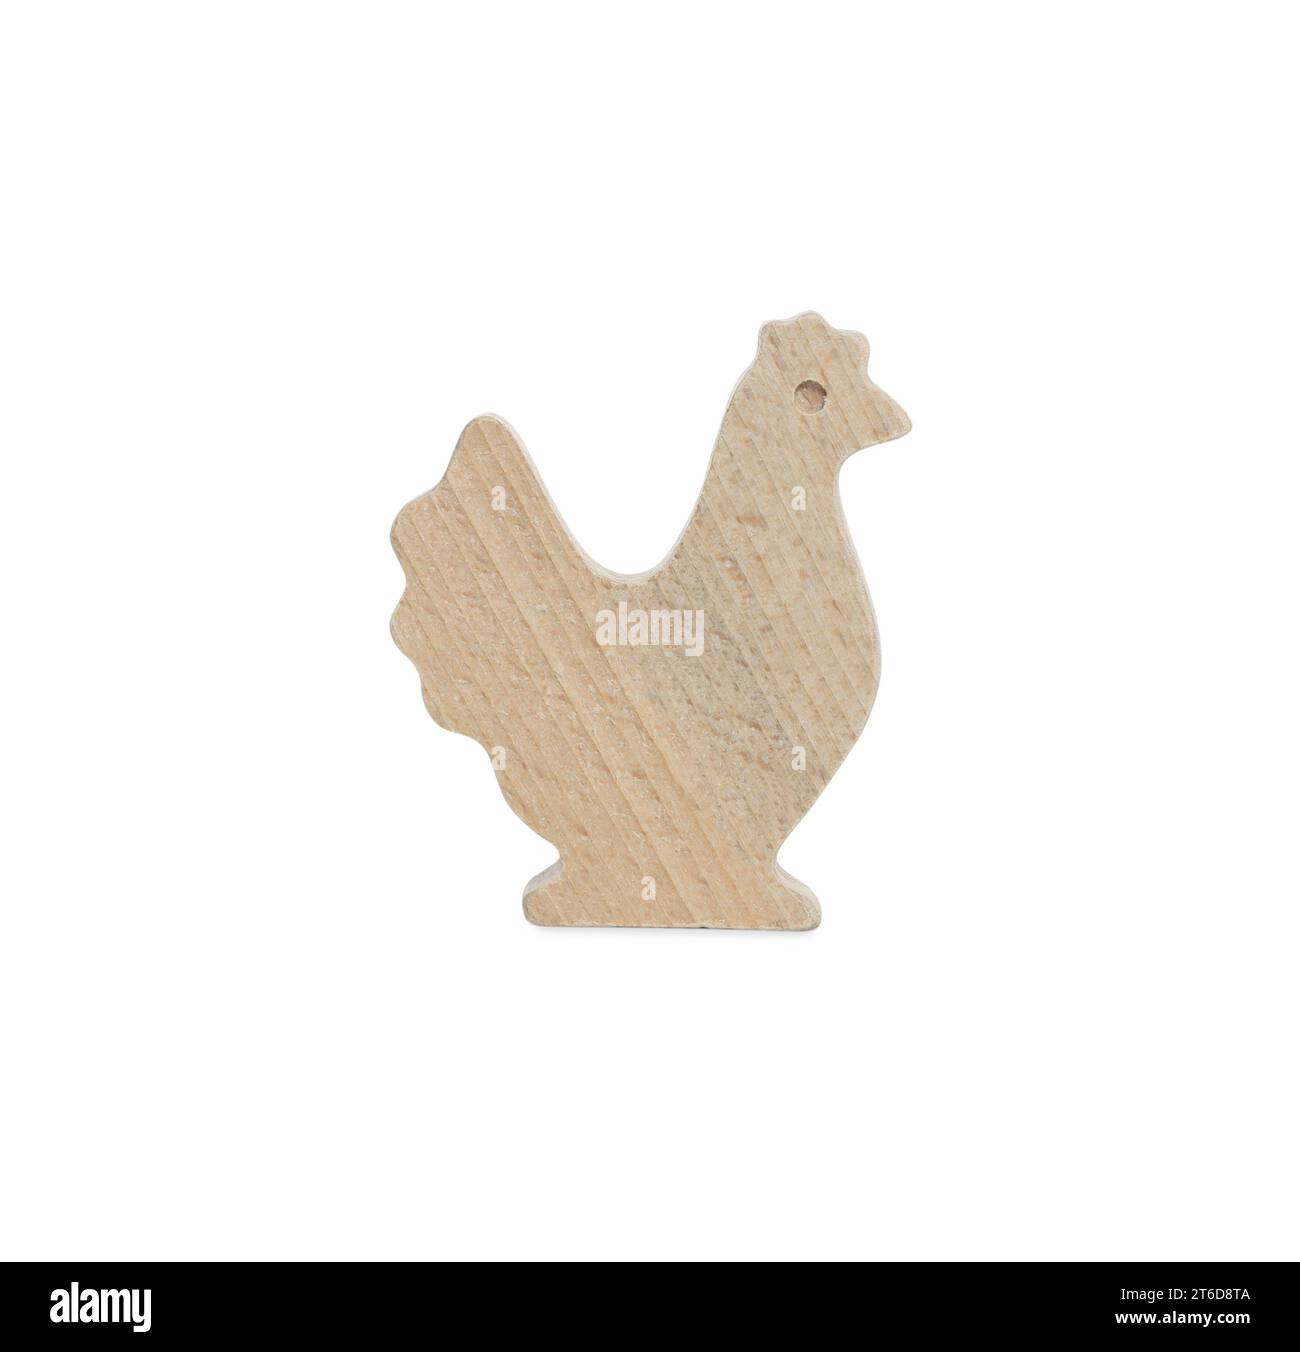 Figura de pollo de madera aislada en blanco. Juguete educativo para el desarrollo de habilidades motoras Foto de stock